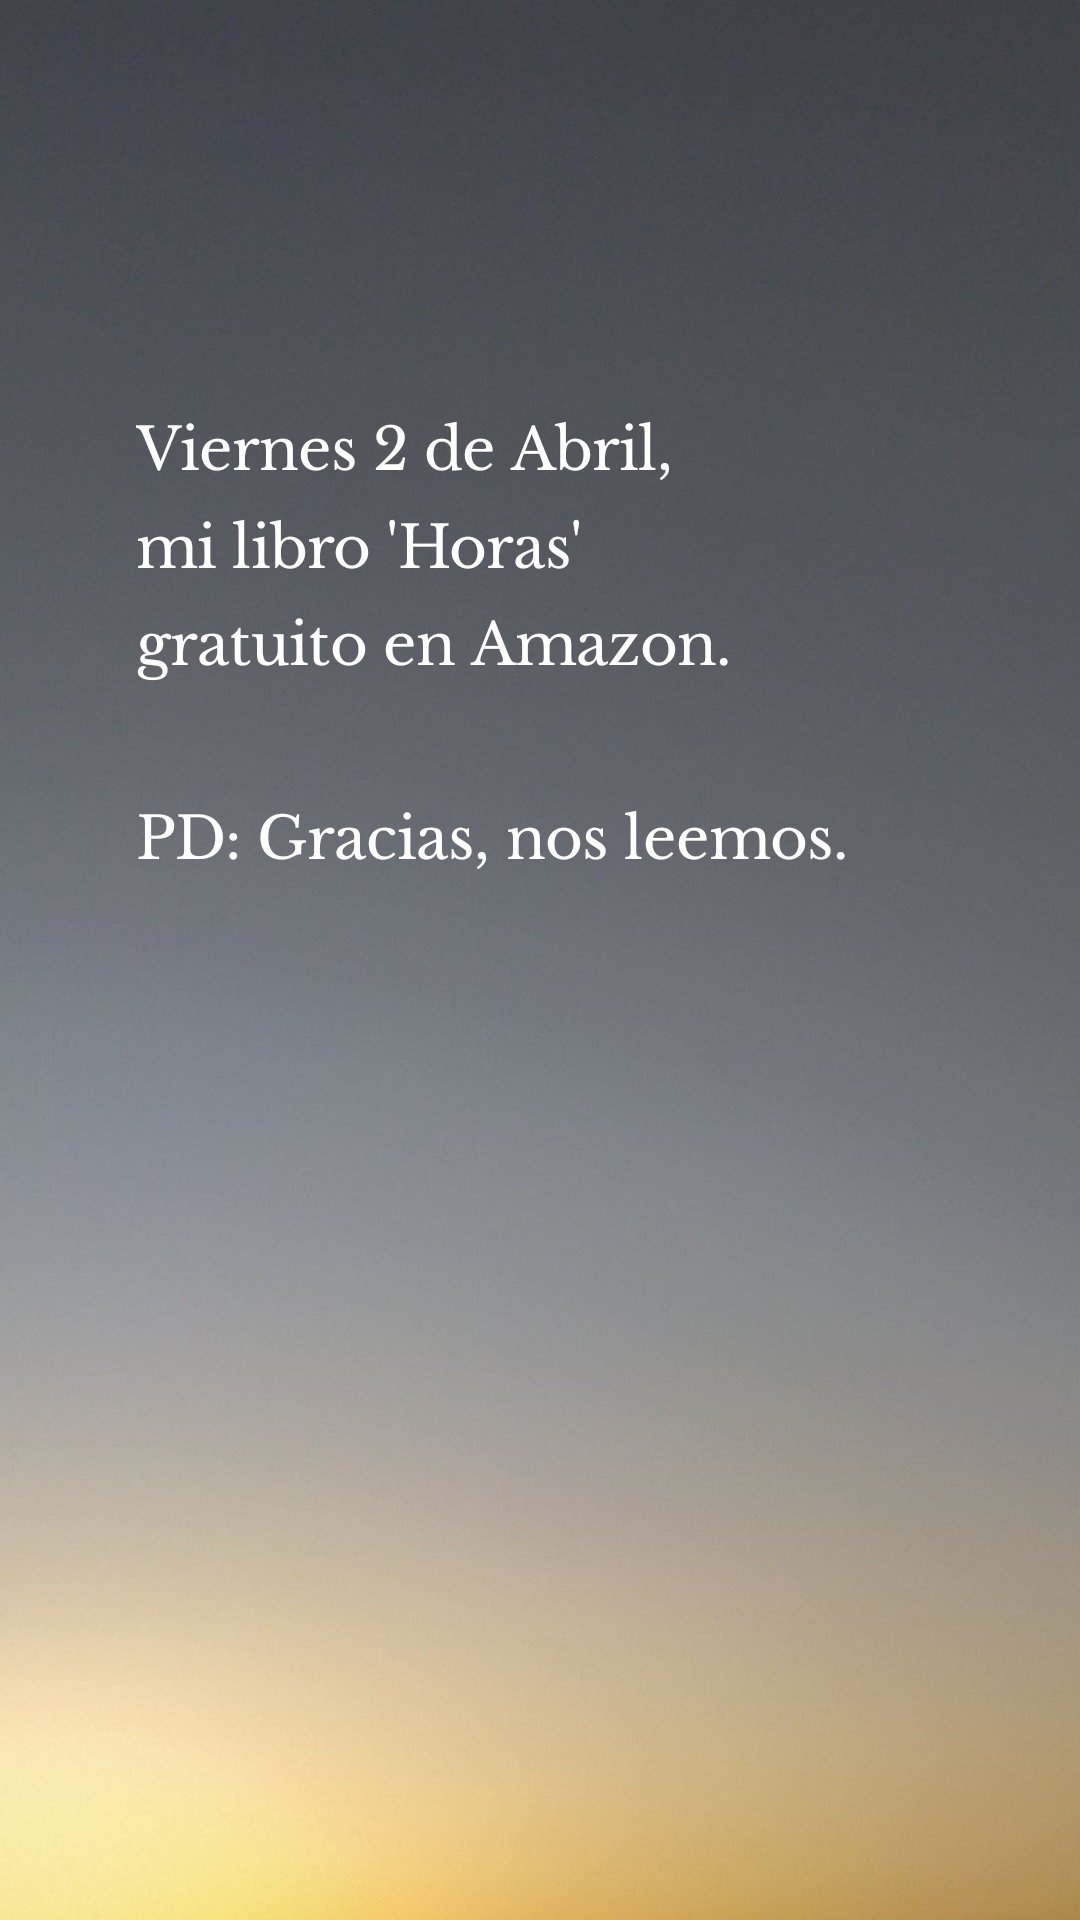 Viernes 2 de Abril,
mi libro 'Horas'
gratuito en Amazon.PD: Gracias, nos leemos.